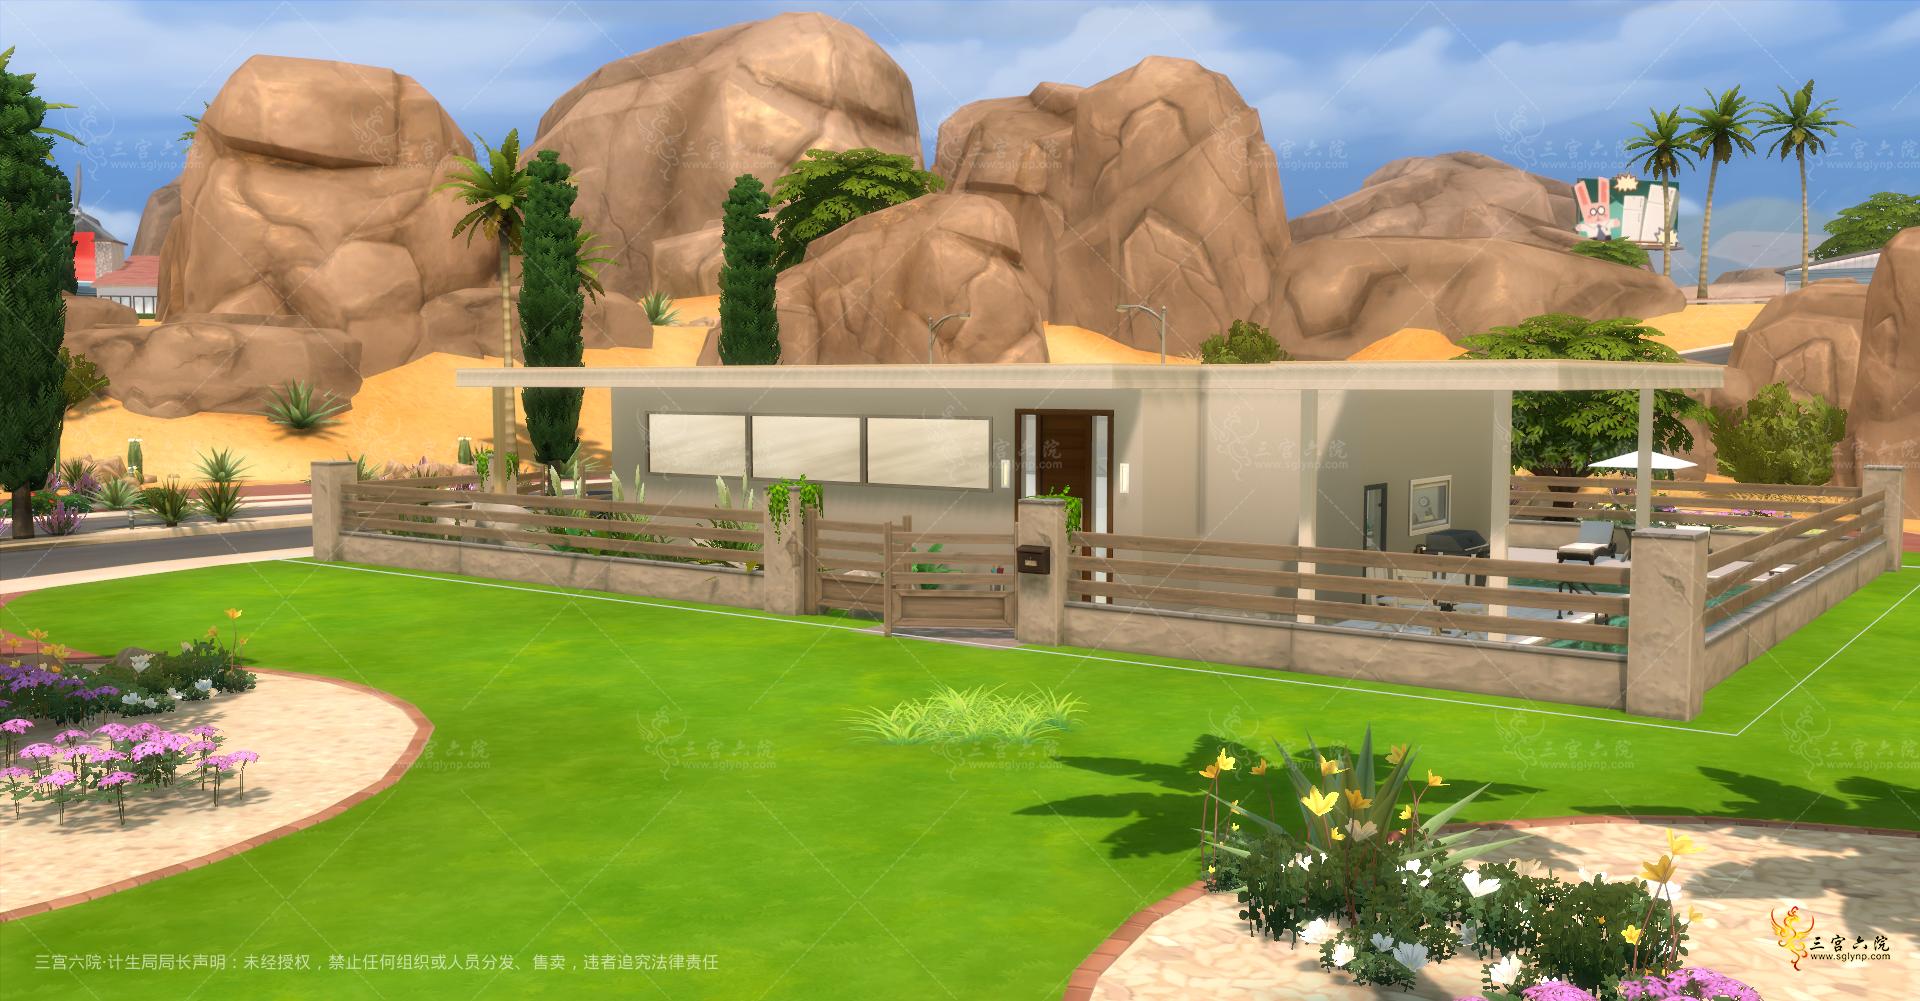 Sims 4 Screenshot 2021.11.22 - 21.59.51.06.png